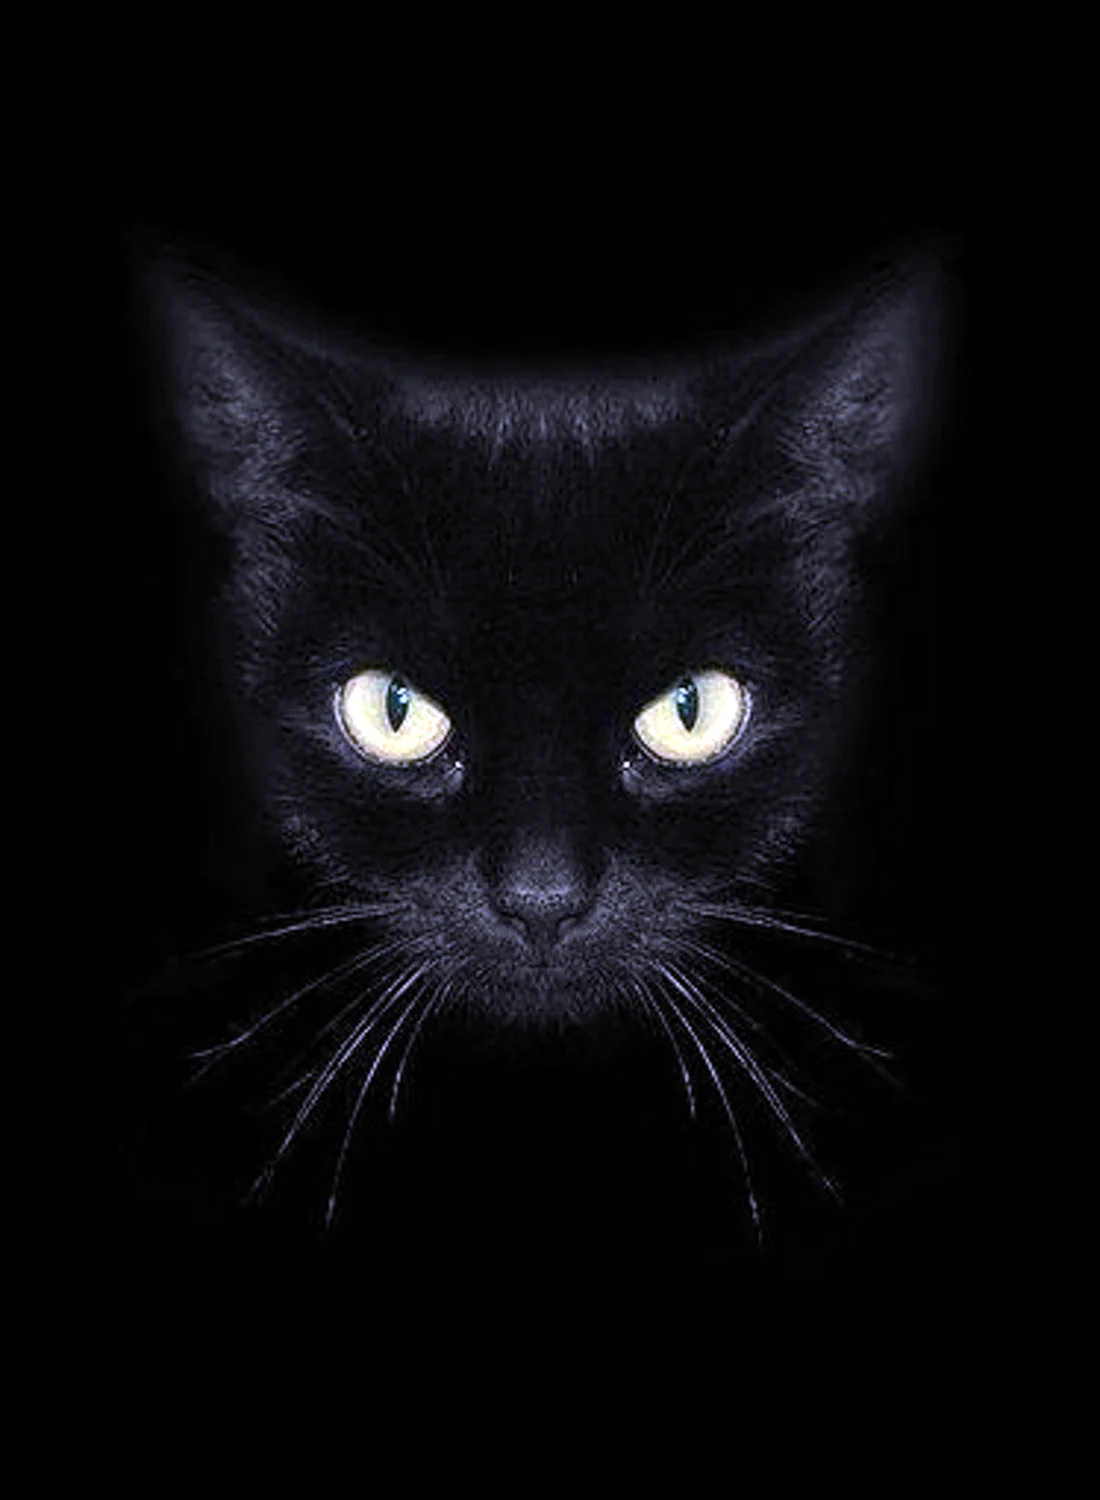 Аватар черный кот. Черные коты. Черная аватарка. Черная кошка в темной комнате. Морда черного кота.